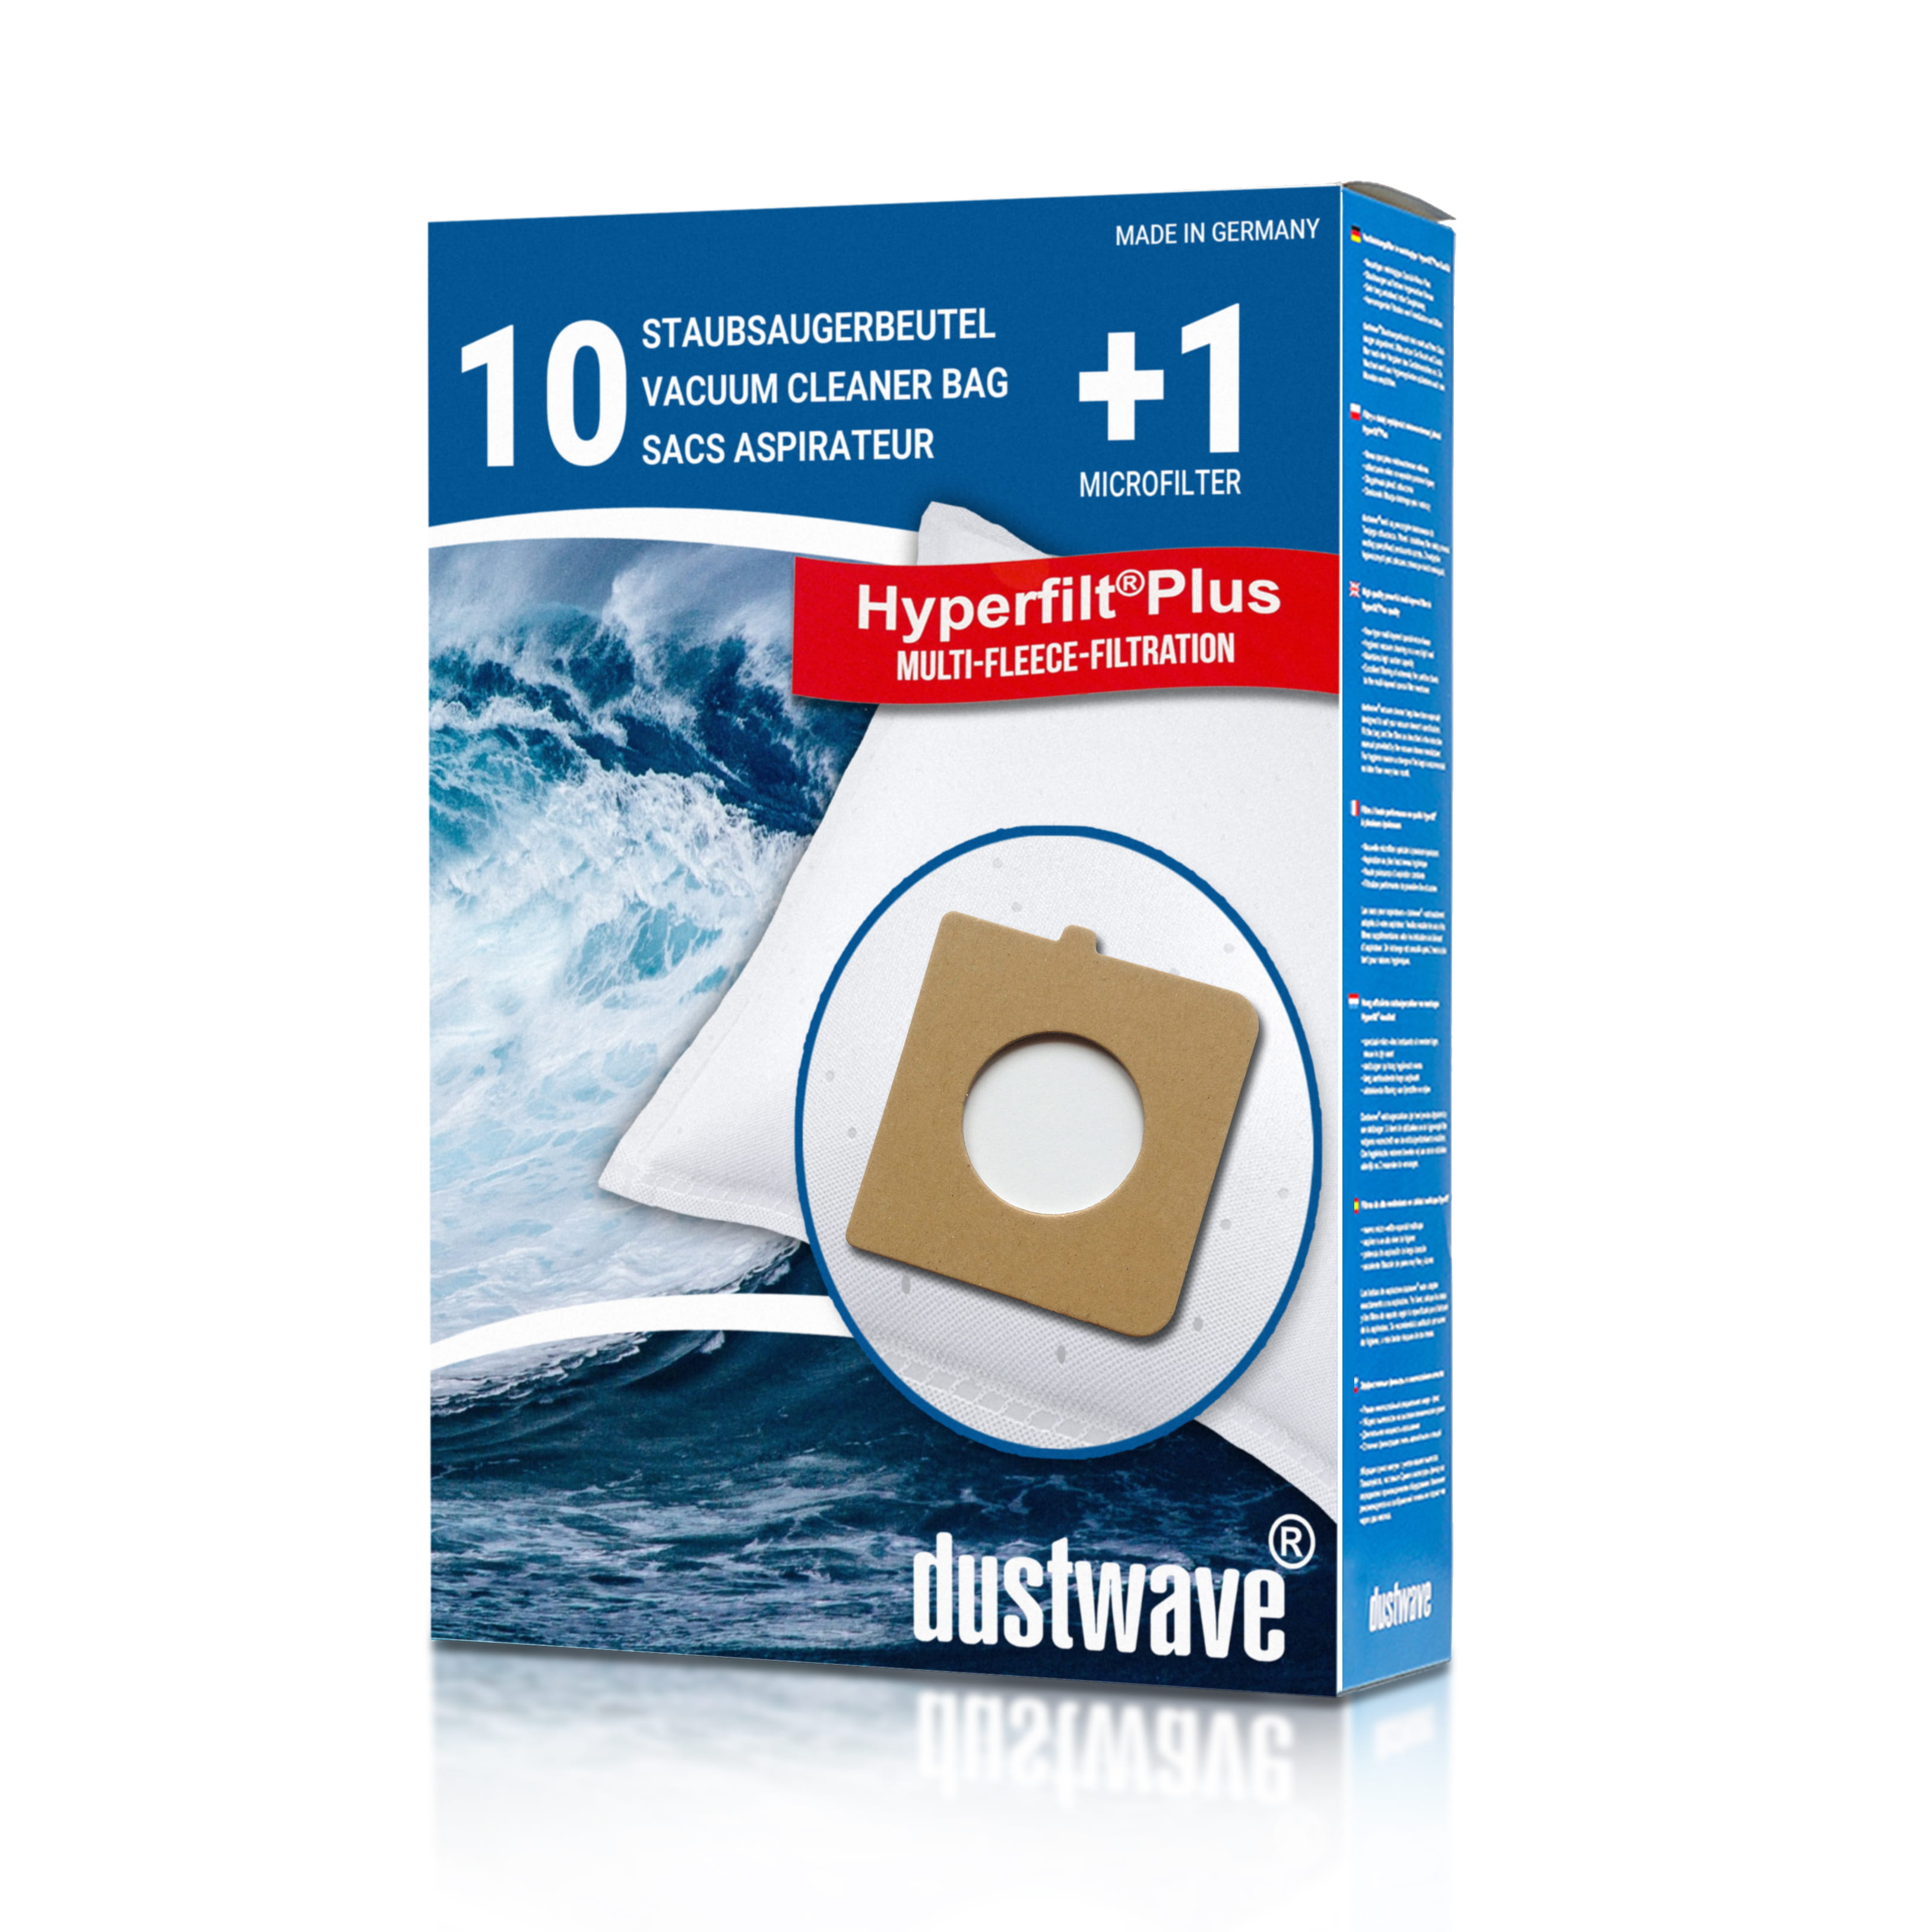 Dustwave® 10 Staubsaugerbeutel für Bomann CB 993 / CB993 - hocheffizient mit Hygieneverschluss - Made in Germany